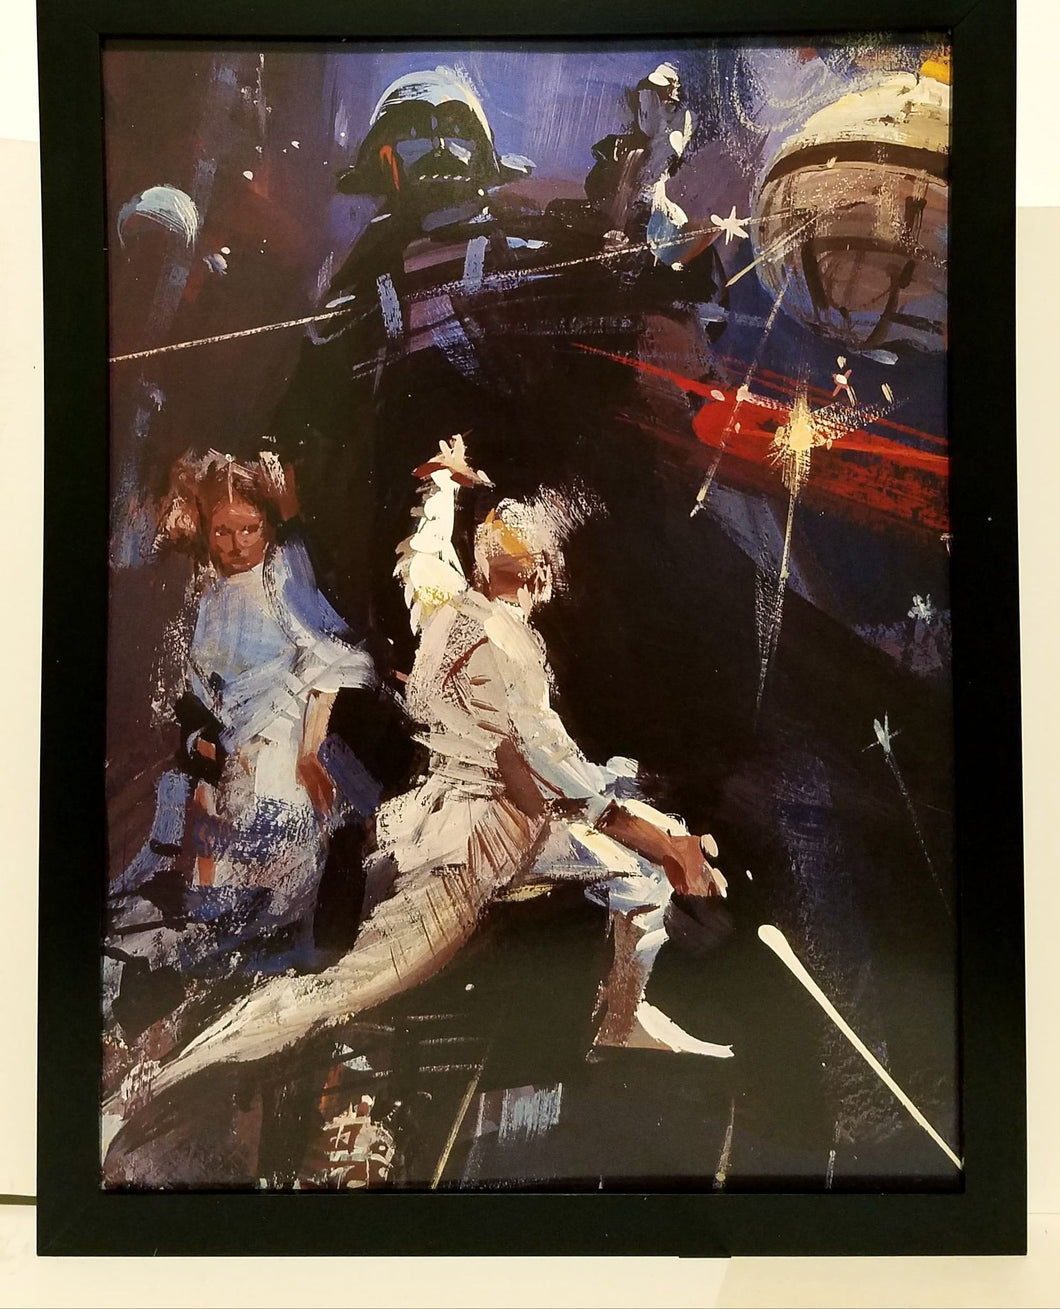 Star Wars 1977 novel cover by John Berkey 9x12 FRAMED Art Print Movie Poster